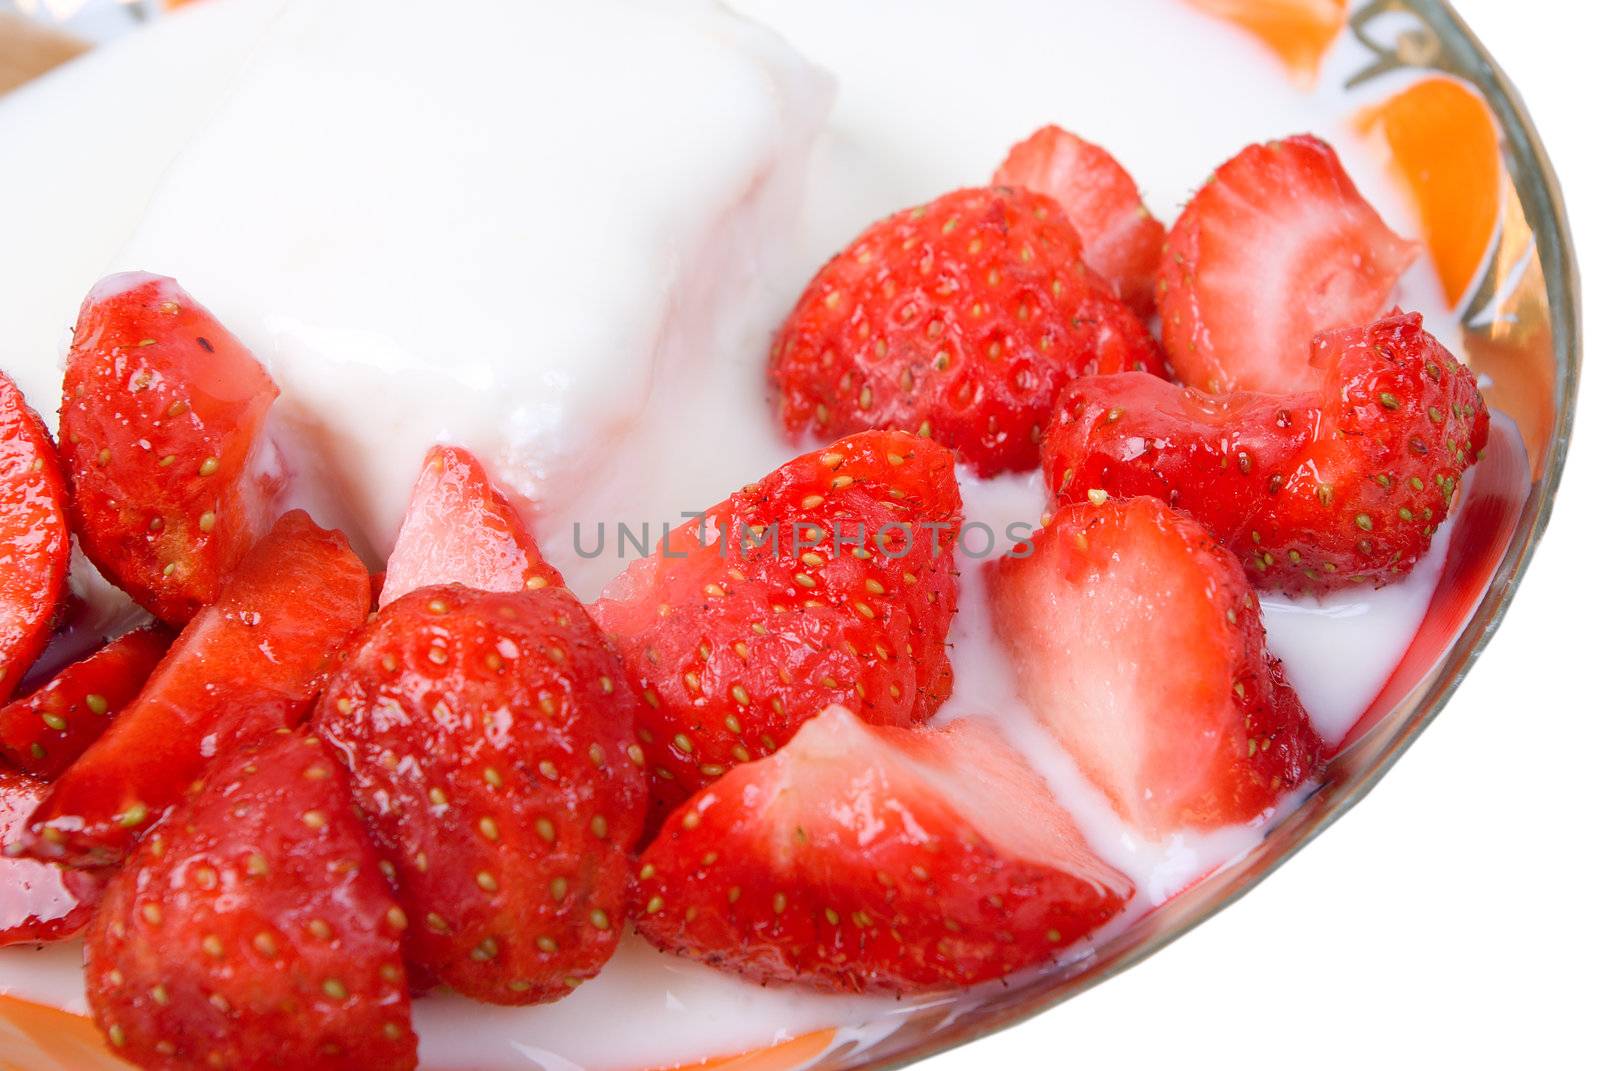 Strawberries and yogurt.Cottage cheese